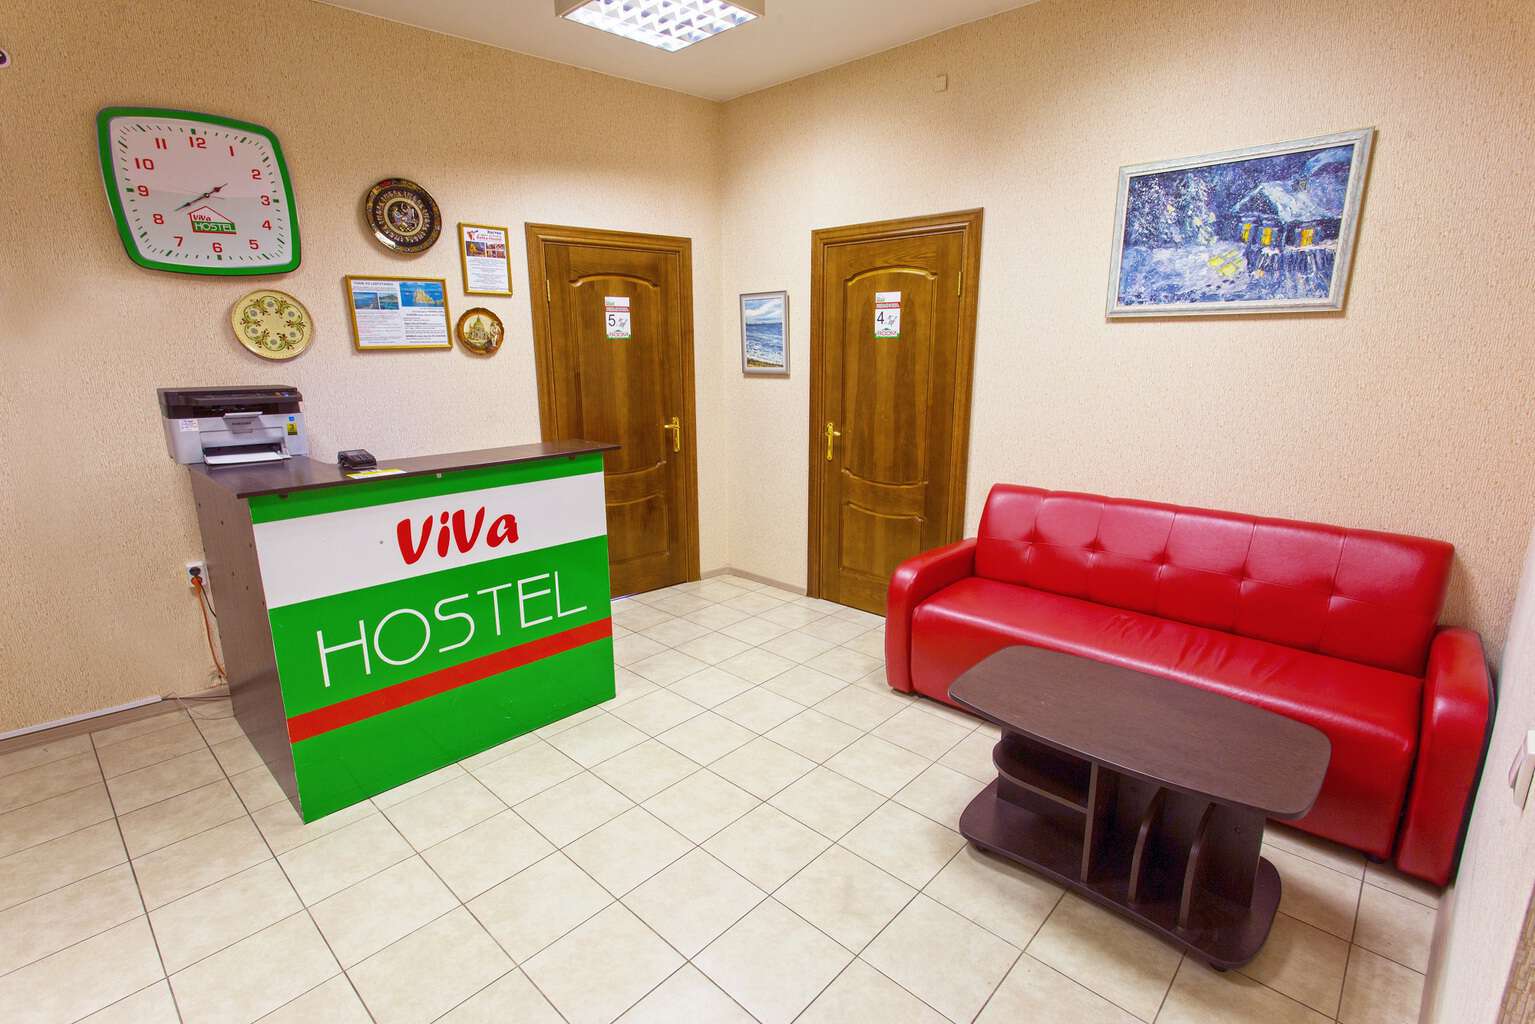 Hostel VIVA